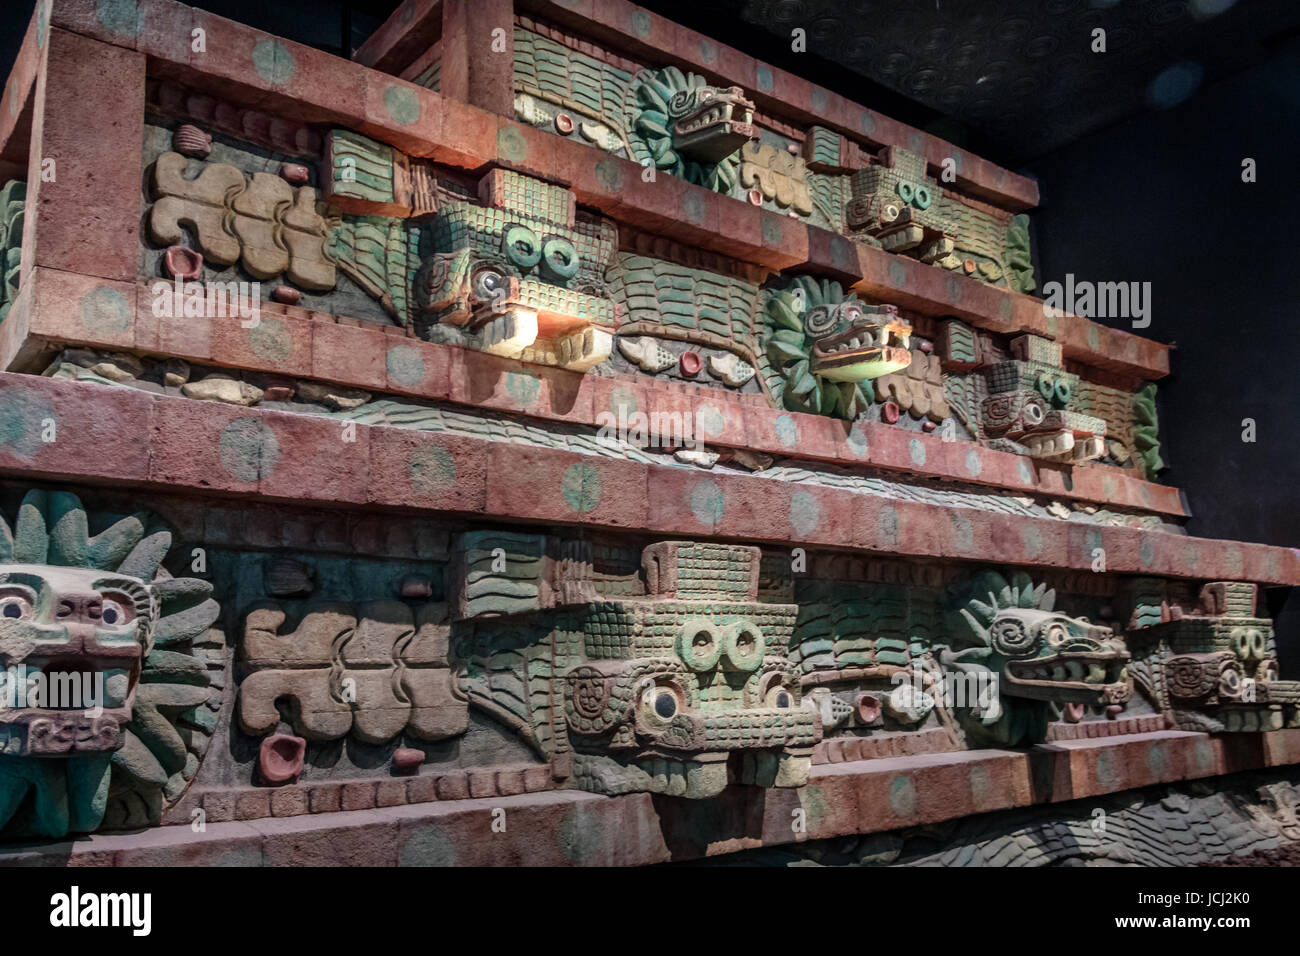 Réplique du Temple de Teotihuacan au Musée National d'anthropologie (Museo Nacional de Antropologia, MNA) - Mexico City, Mexique Banque D'Images